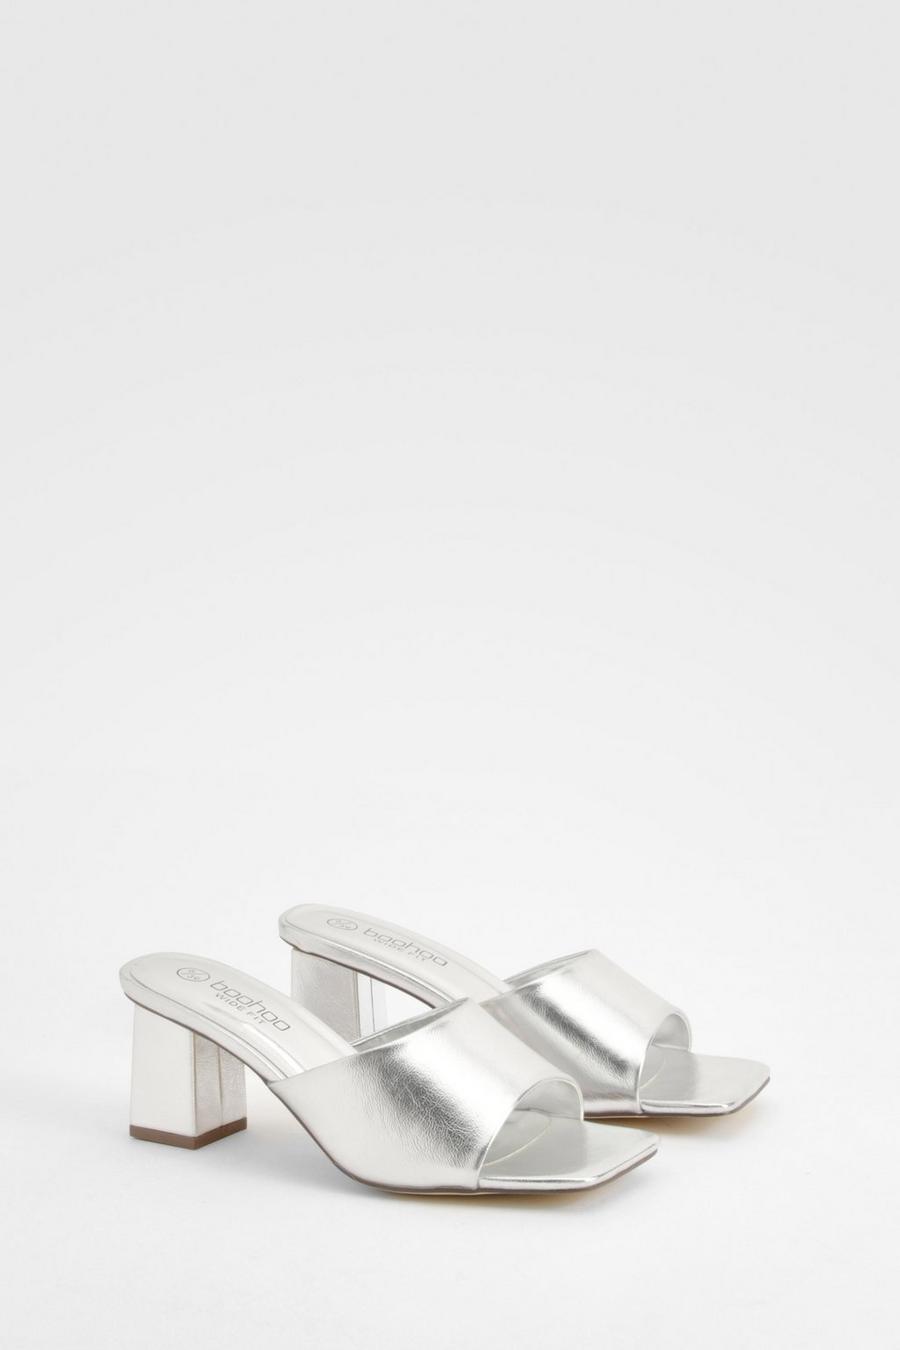 Sandali Mules a calzata ampia metallizzati con tacco basso a blocco, Silver